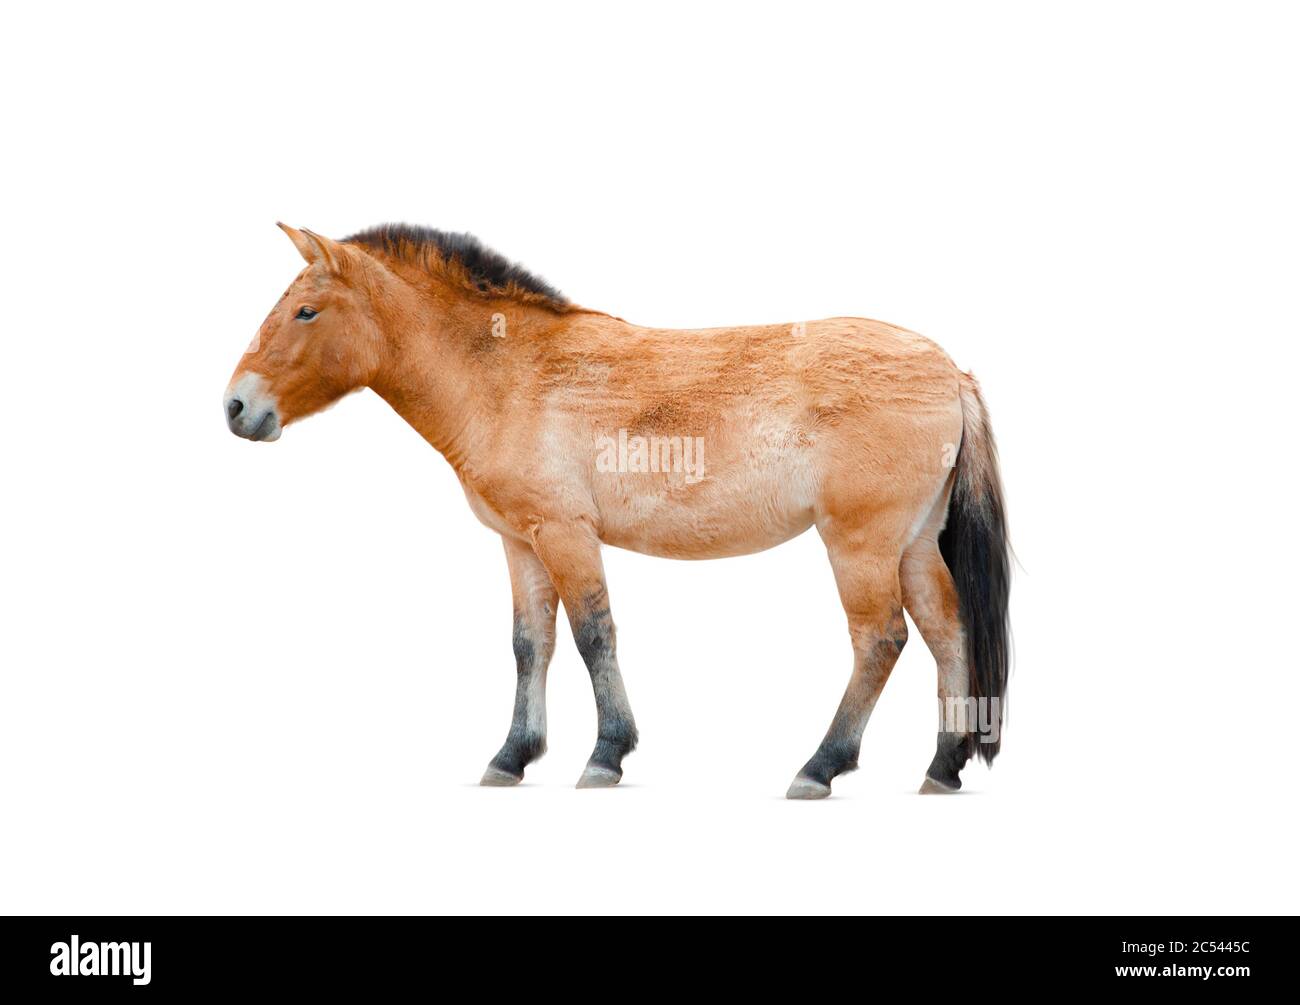 Le cheval de Przewalski isolé sur un blanc. lat. Equus przewalskii cabalus, cheval sauvage. Fond blanc Banque D'Images